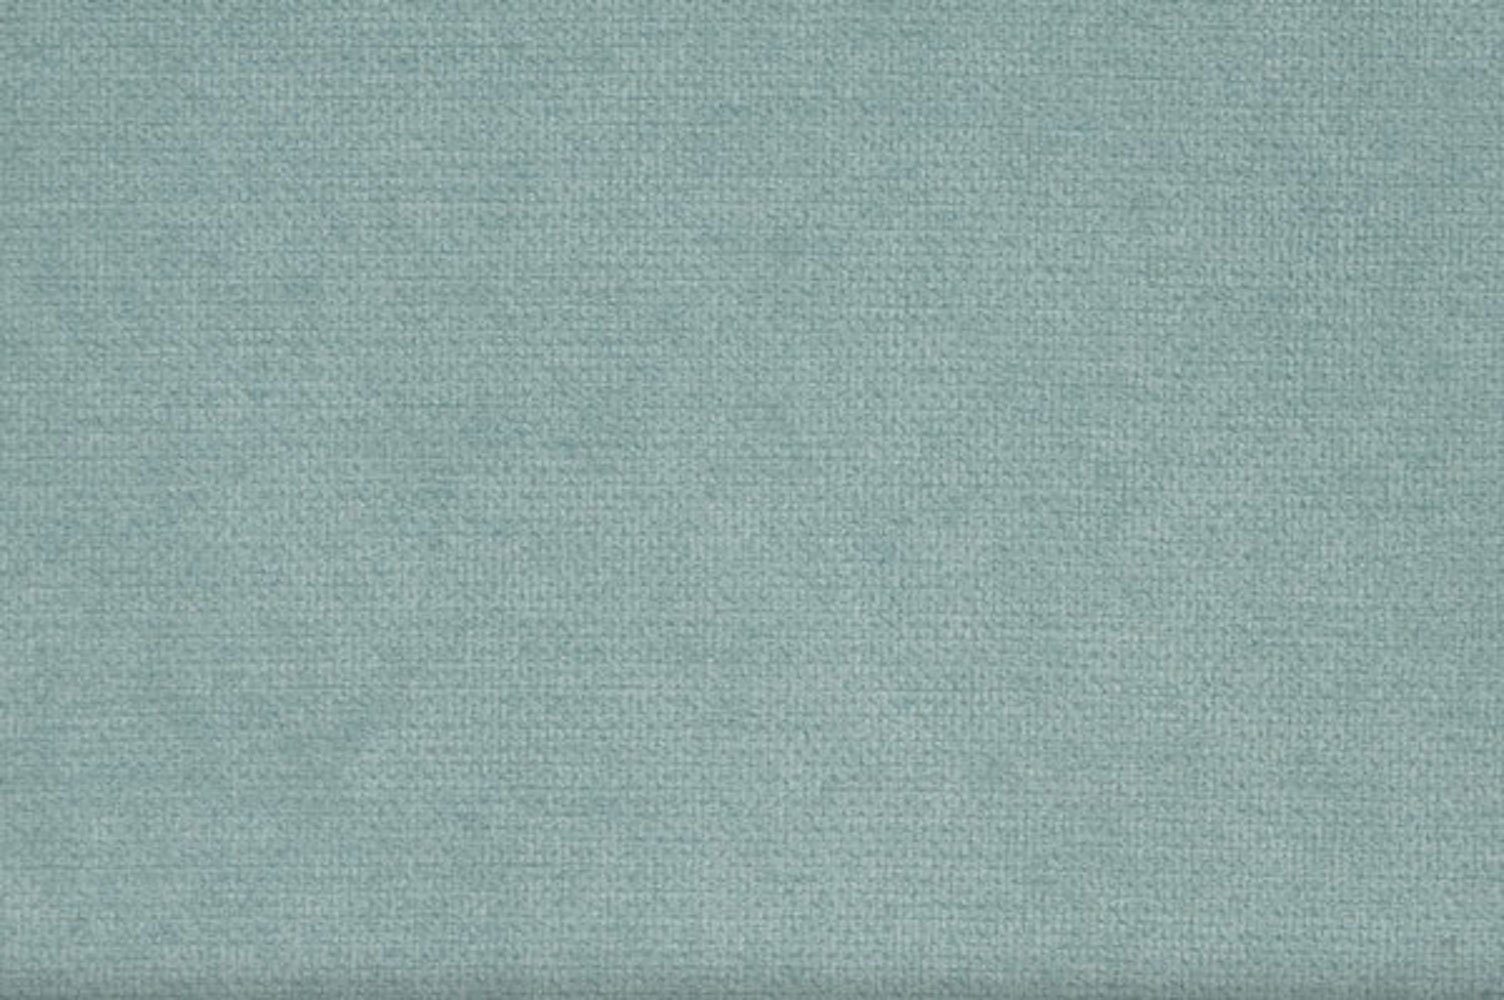 Feldmann-Wohnen Polstergarnitur (Avra bestehend mint 2 Sofa Farbe Lira, wählbar aus und 3-teilig Sessel 11)